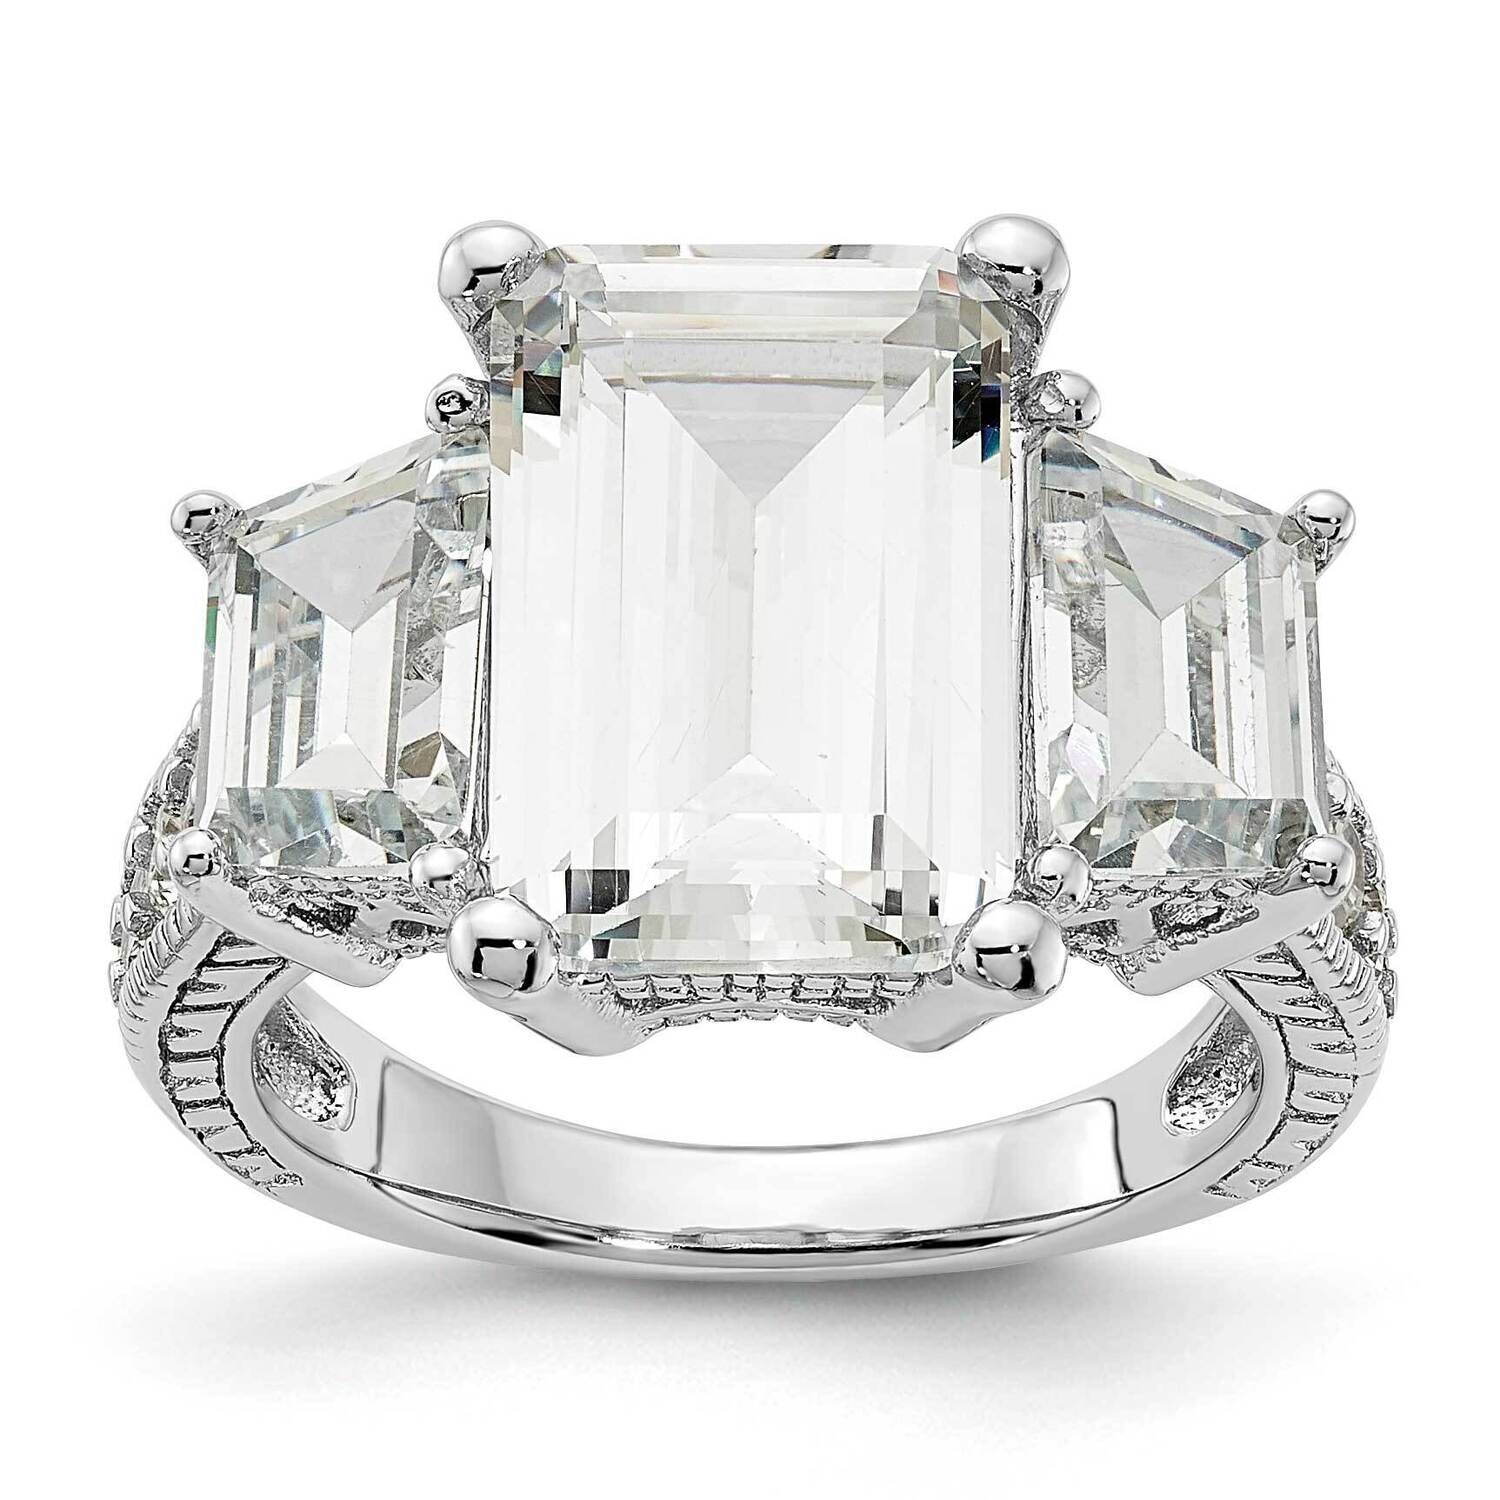 Cheryl M Fancy Emerald-Cut Brilliant-Cut CZ 3 Stone Ring Sterling Silver Rhodium-Plated QCM1492